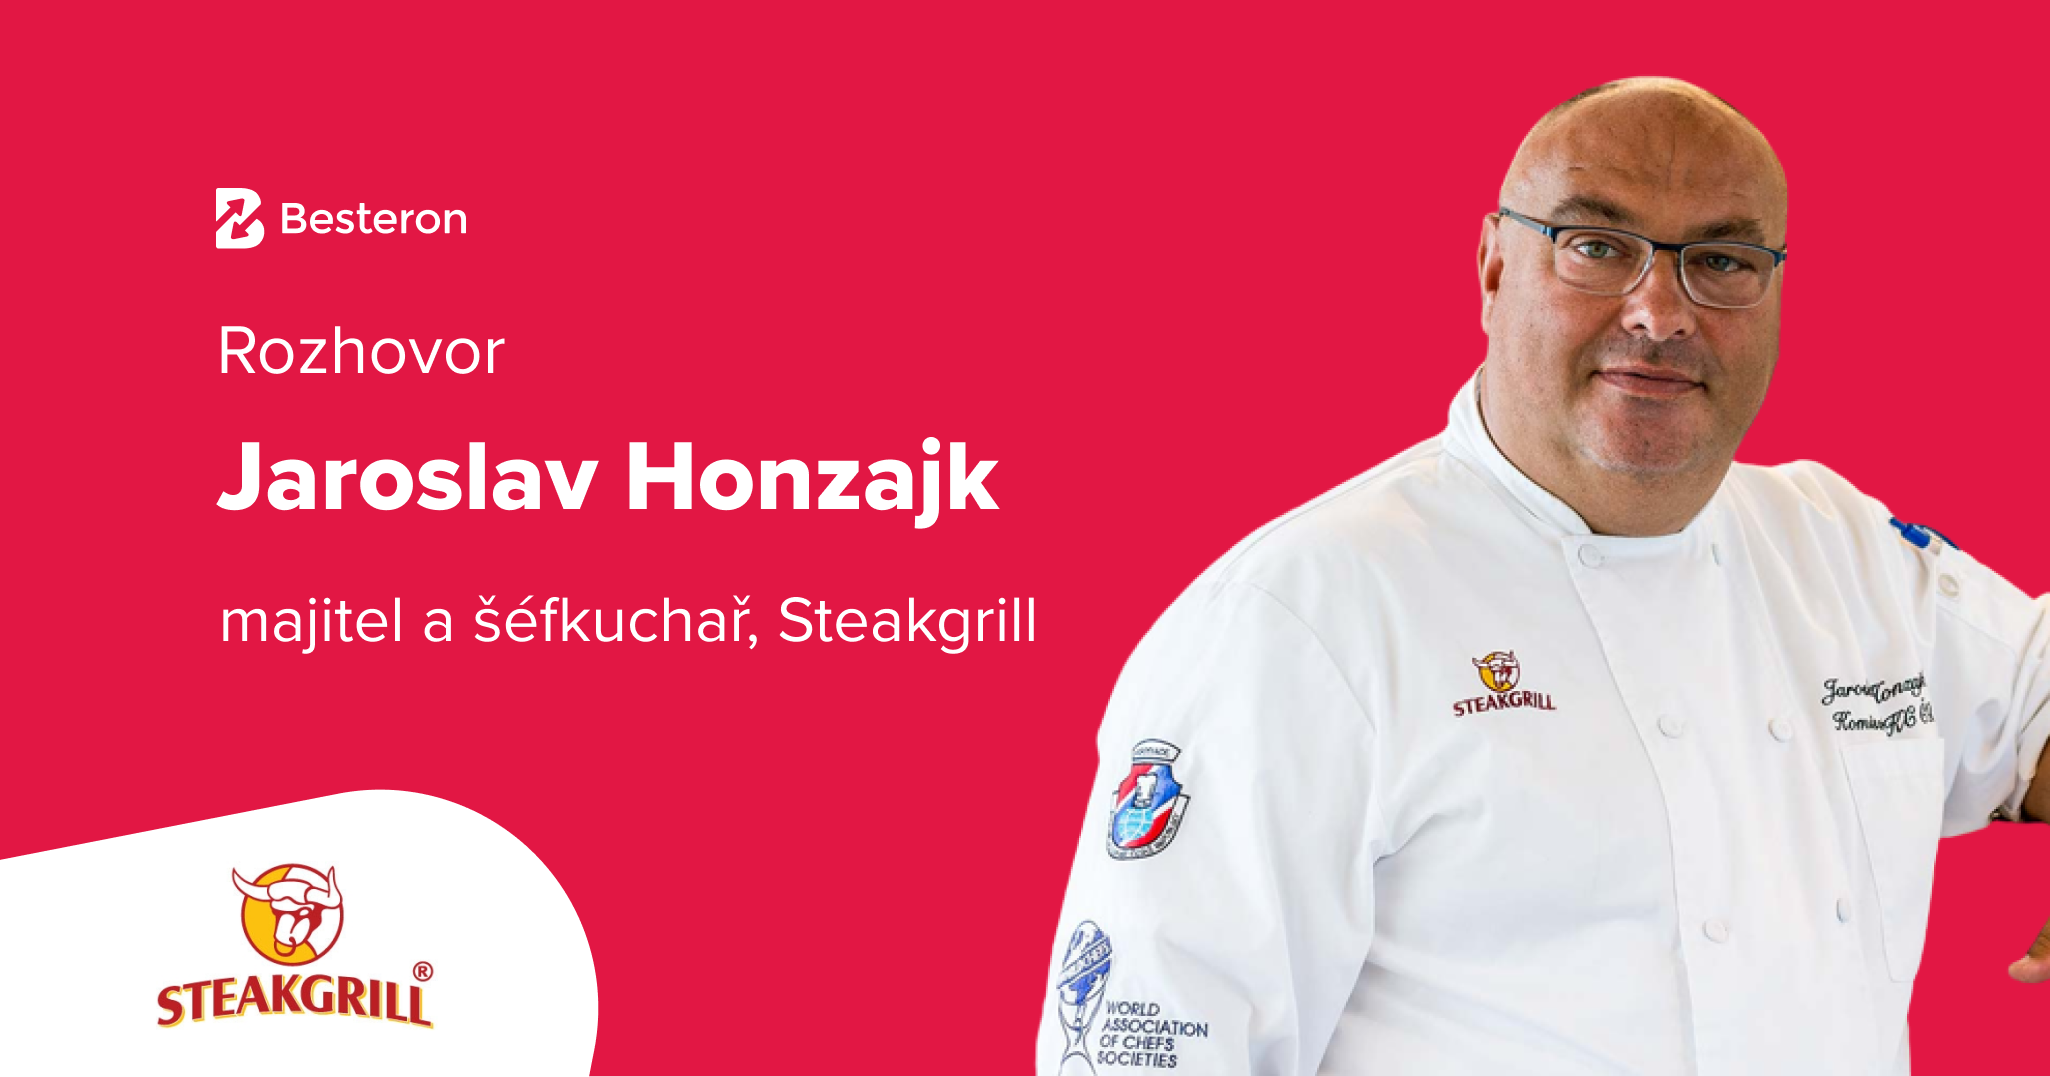 Jaroslav Honzajk, Steakgrill: Nebojte se inovativních nápadů